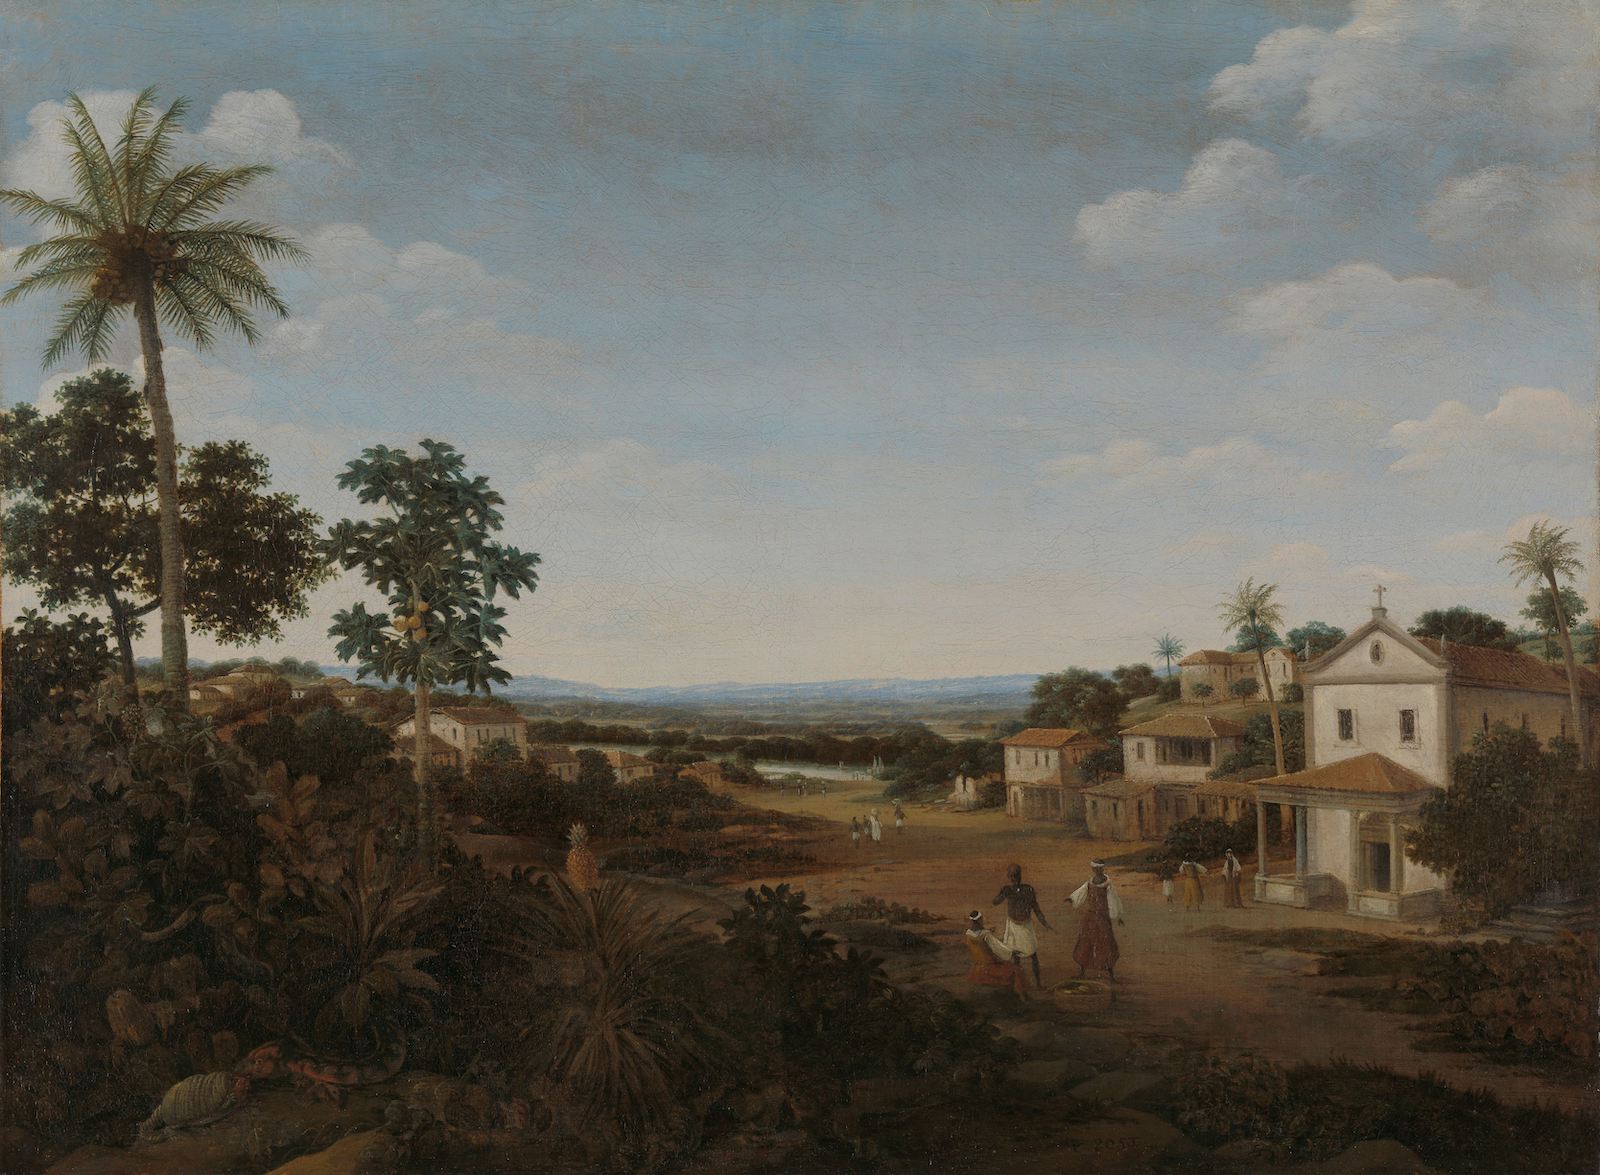 Landscape in Brazil, by Frans Jansz Post, c. 1665-69. Rijksmuseum. Public Domain.